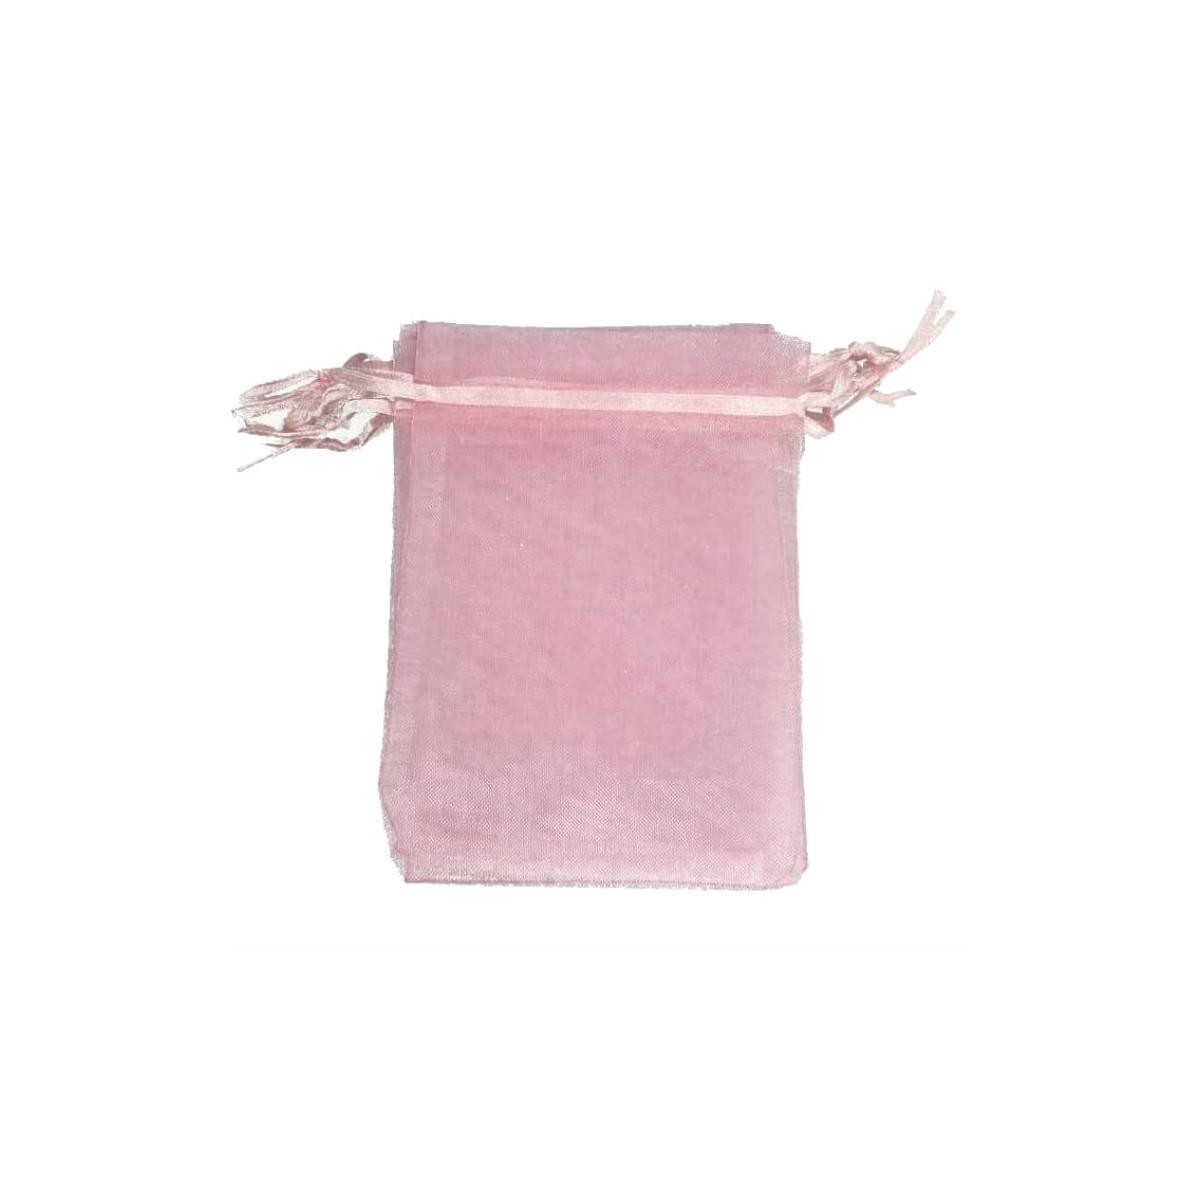 Decoration pochettes cadeaux organza rose